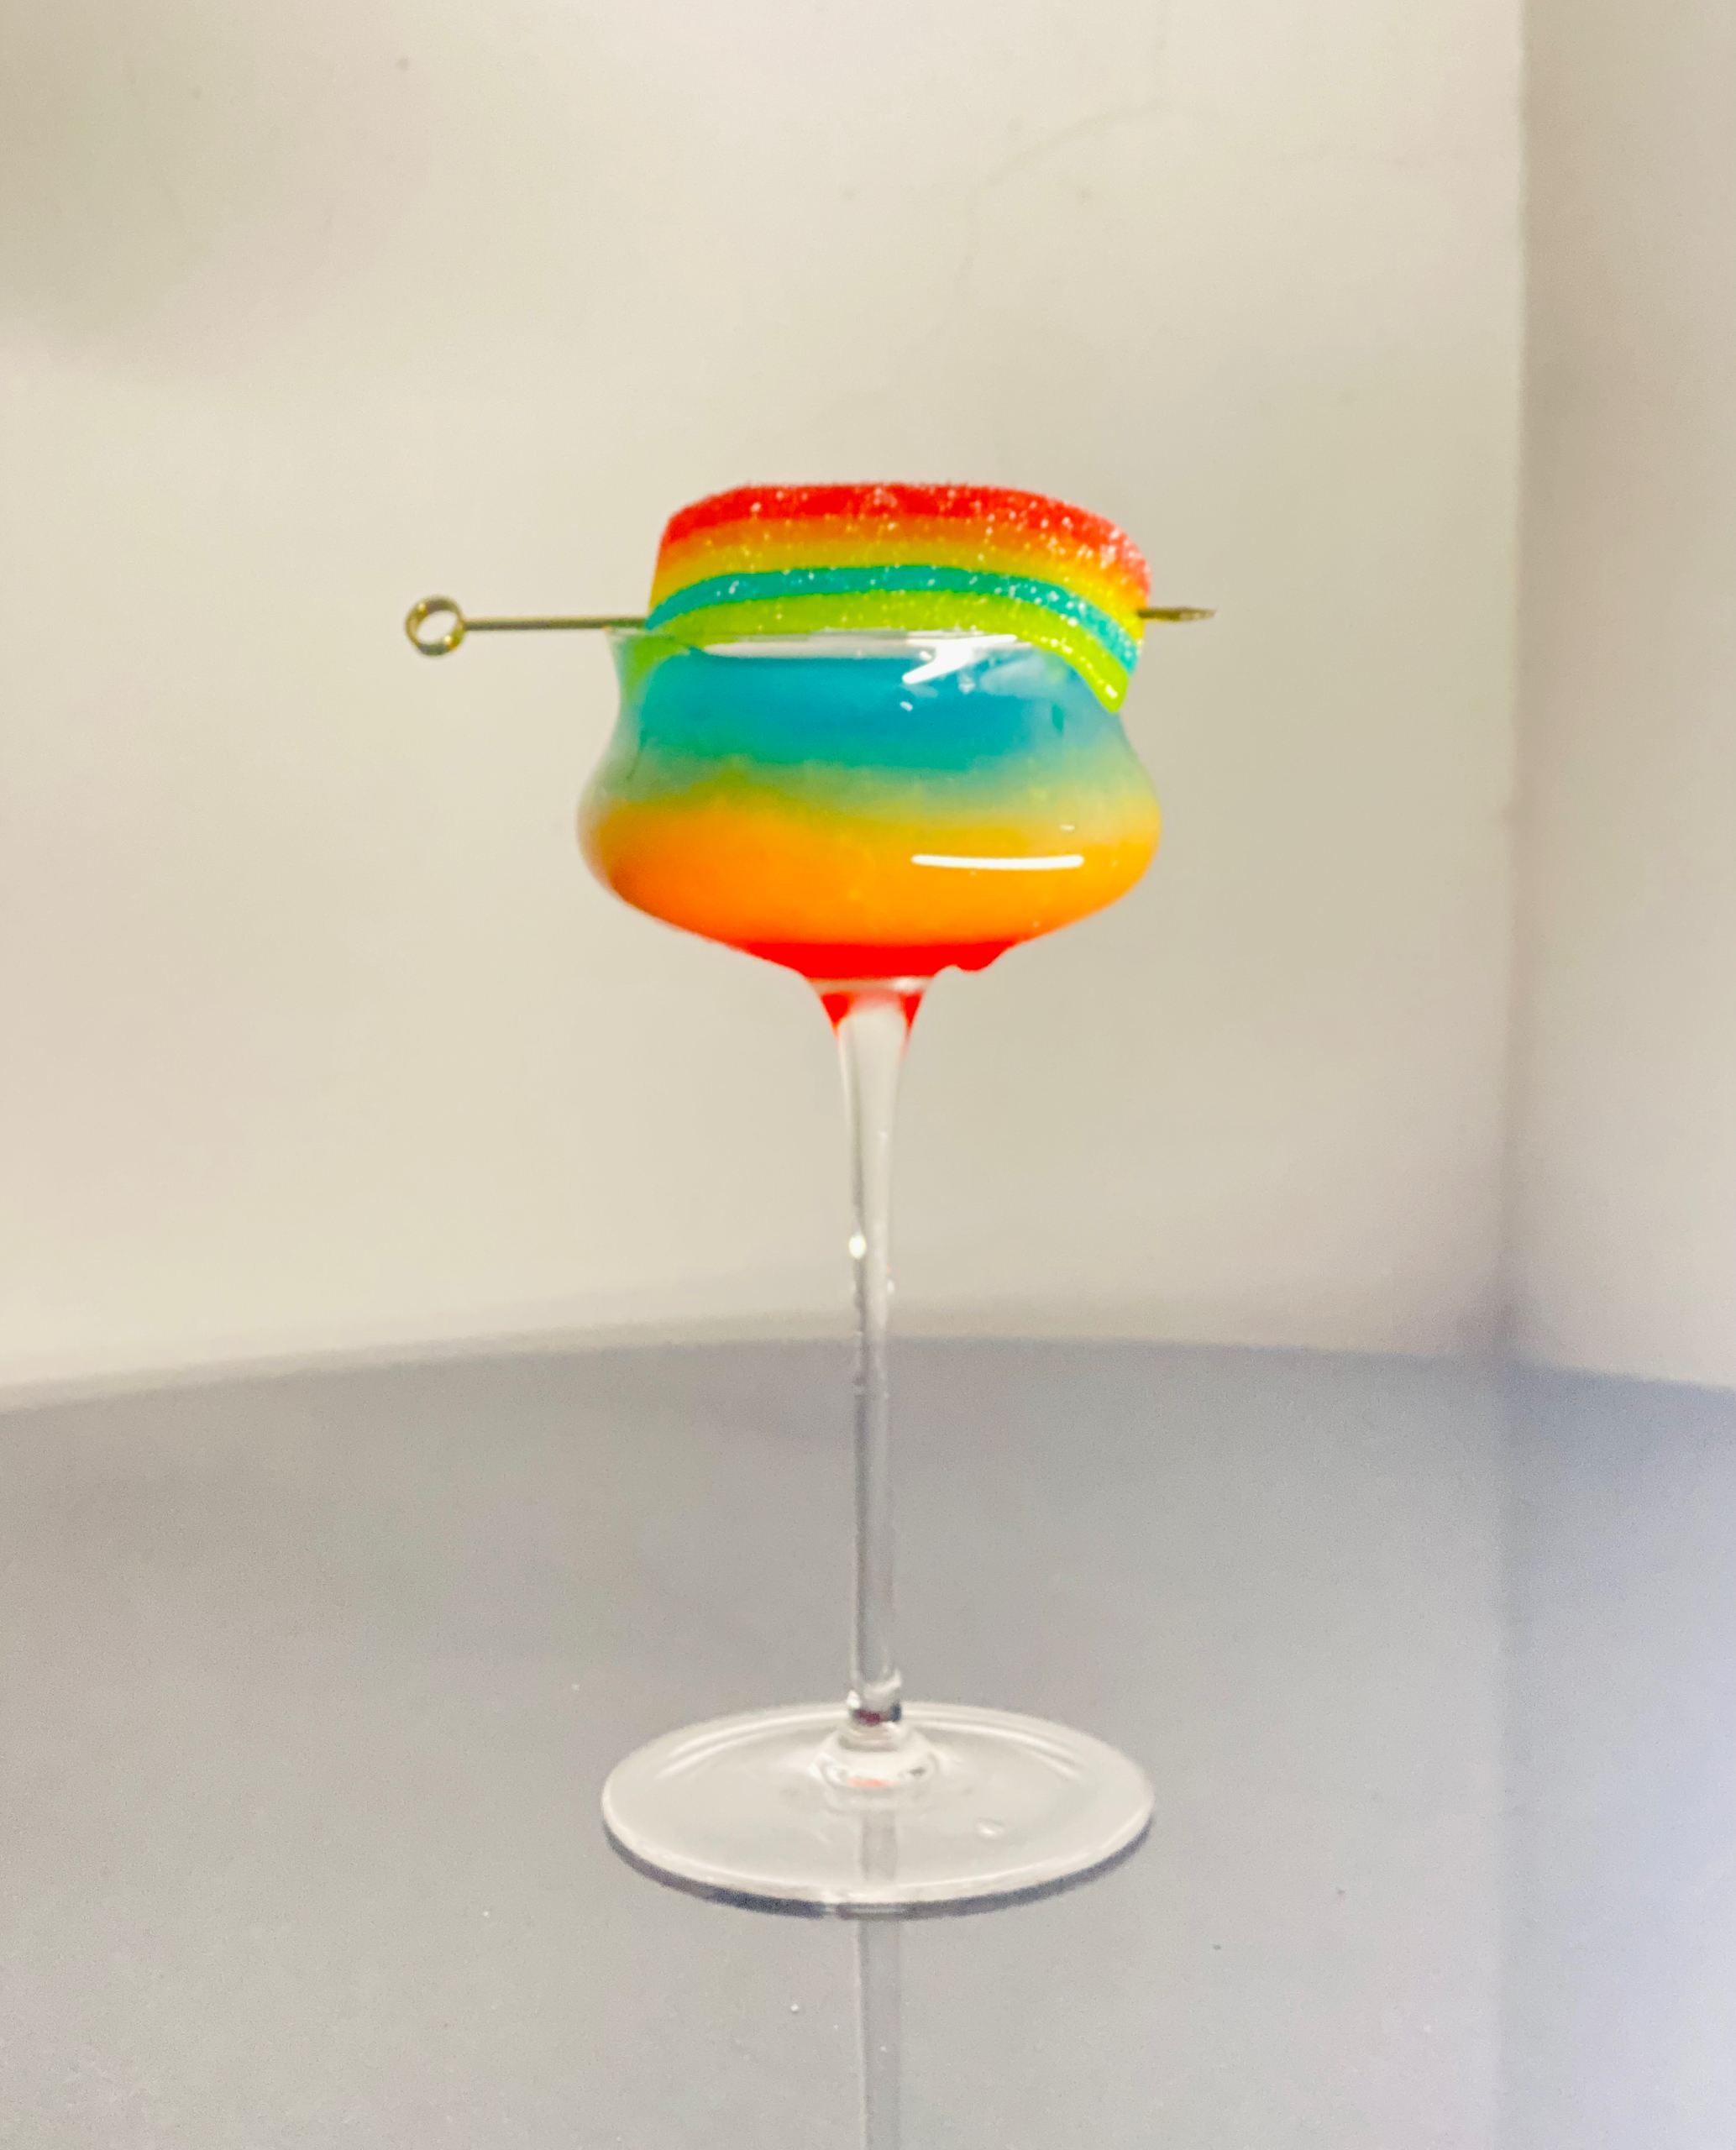 彩虹果汁 微醺鸡尾酒 一起喝下这道彩虹